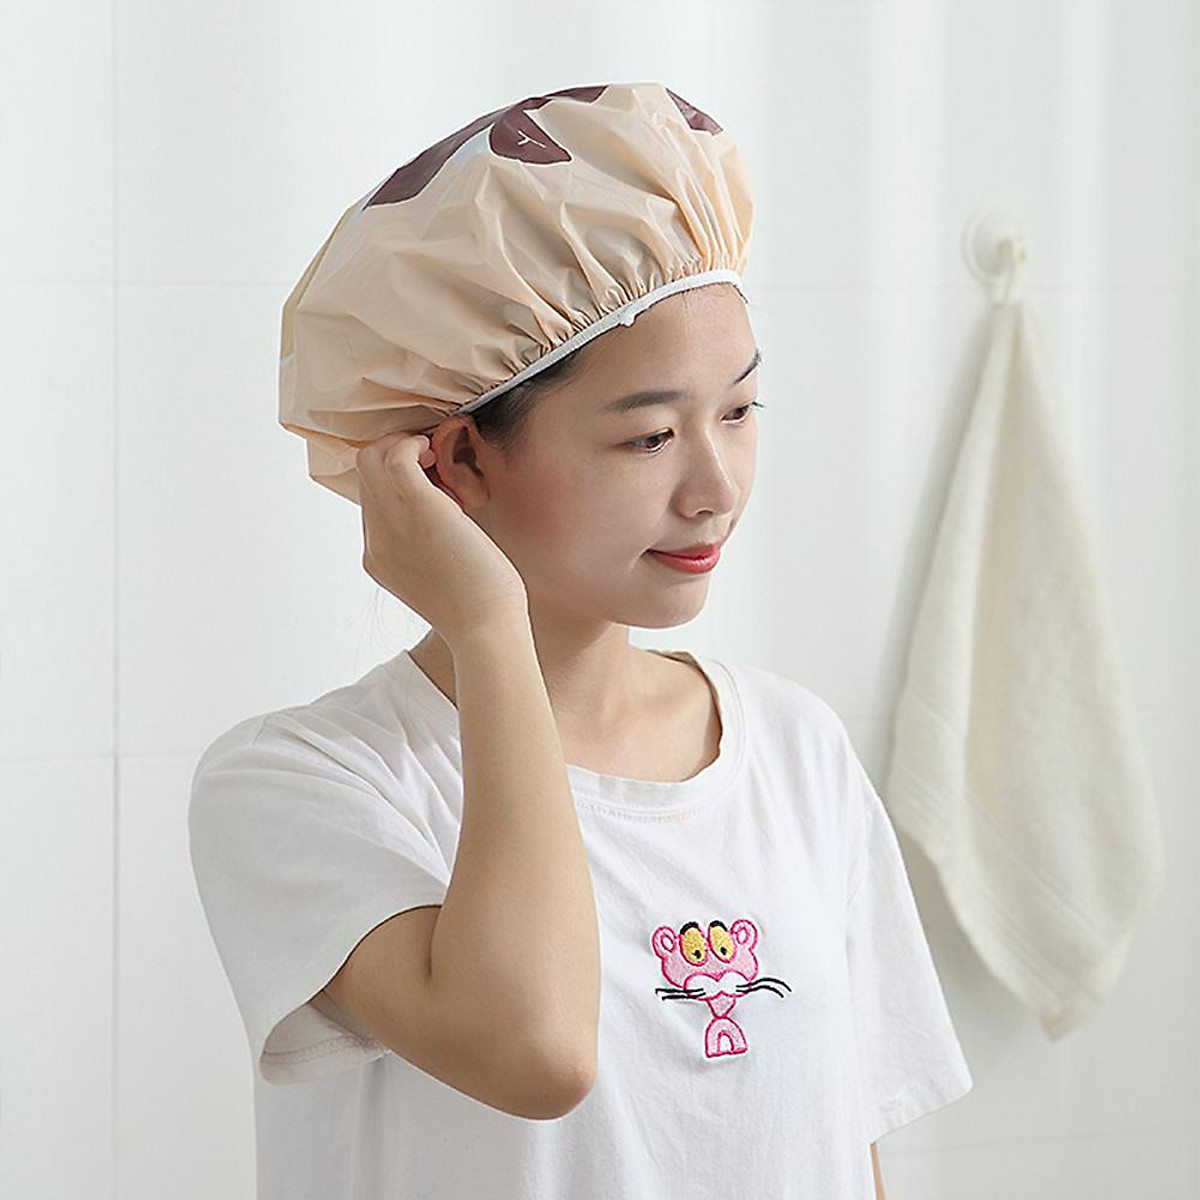 Mua Waterproof Cartoon Shower Bath Cap Protective Bathroom Hat Accessories